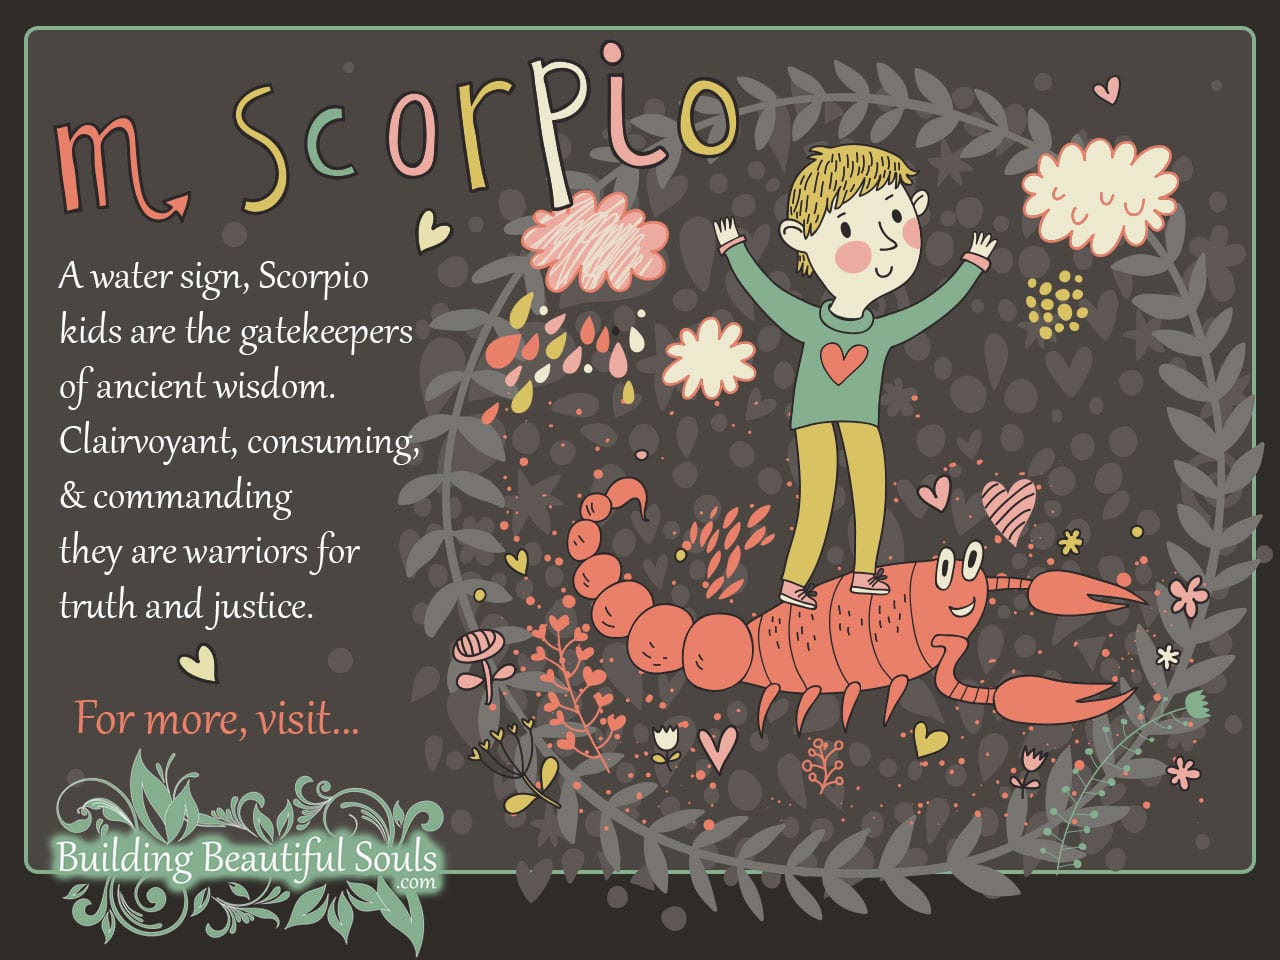 8. Scorpio